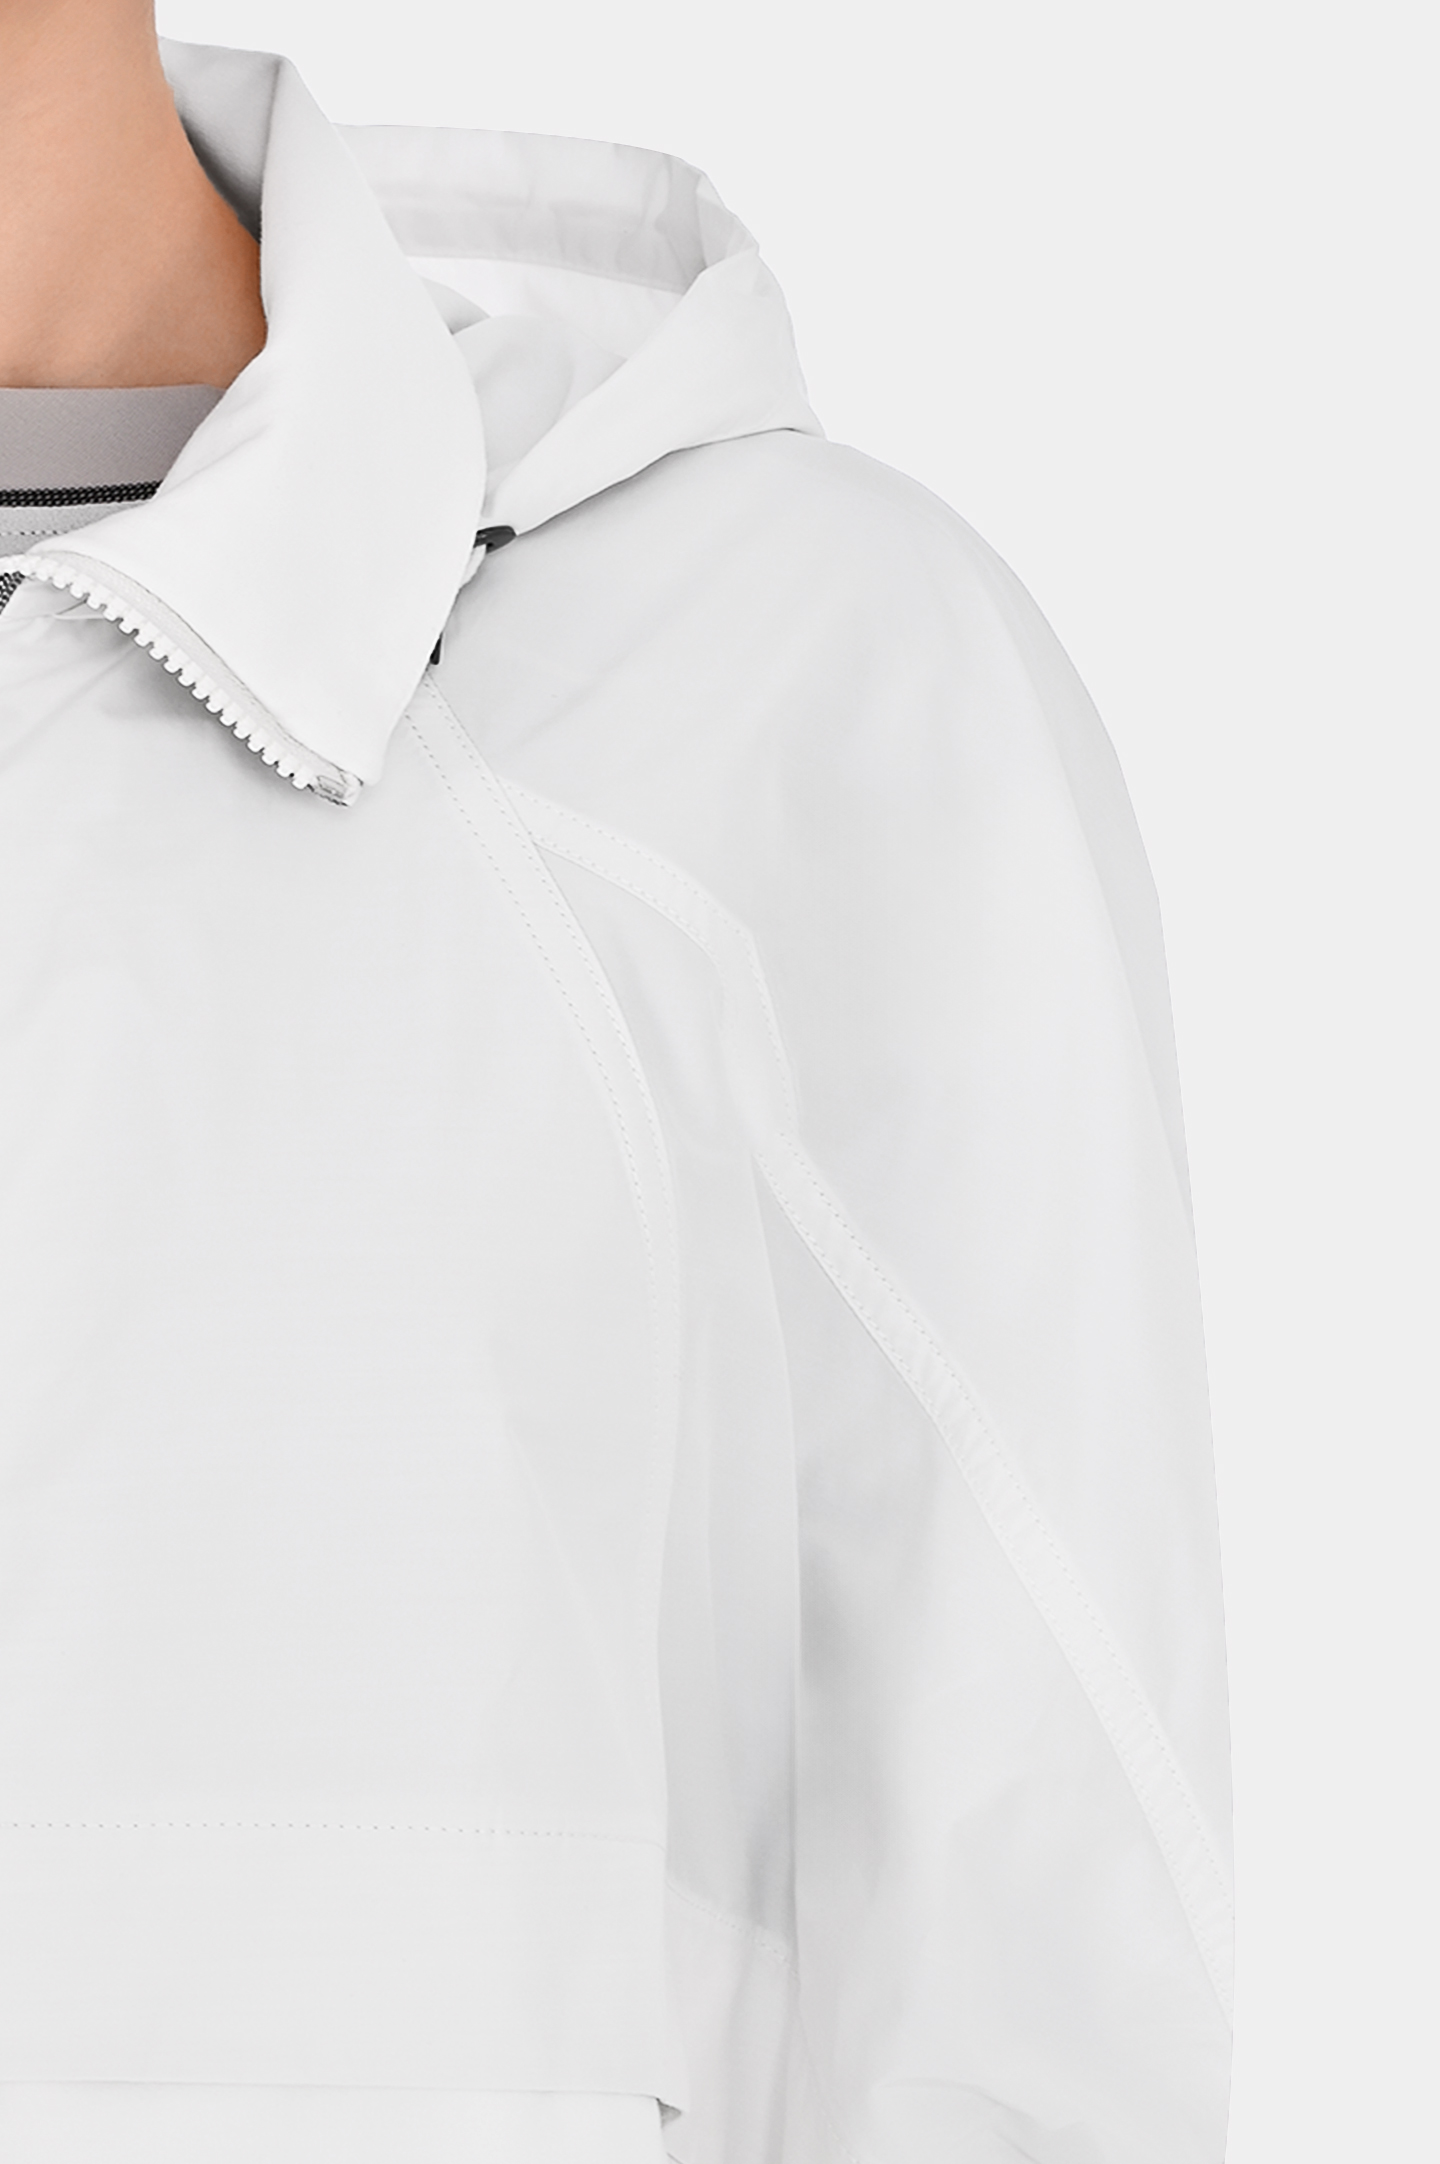 Спортивная куртка из полиэстера с капюшоном BRUNELLO  CUCINELLI MB574EP406, цвет: Белый, Женский